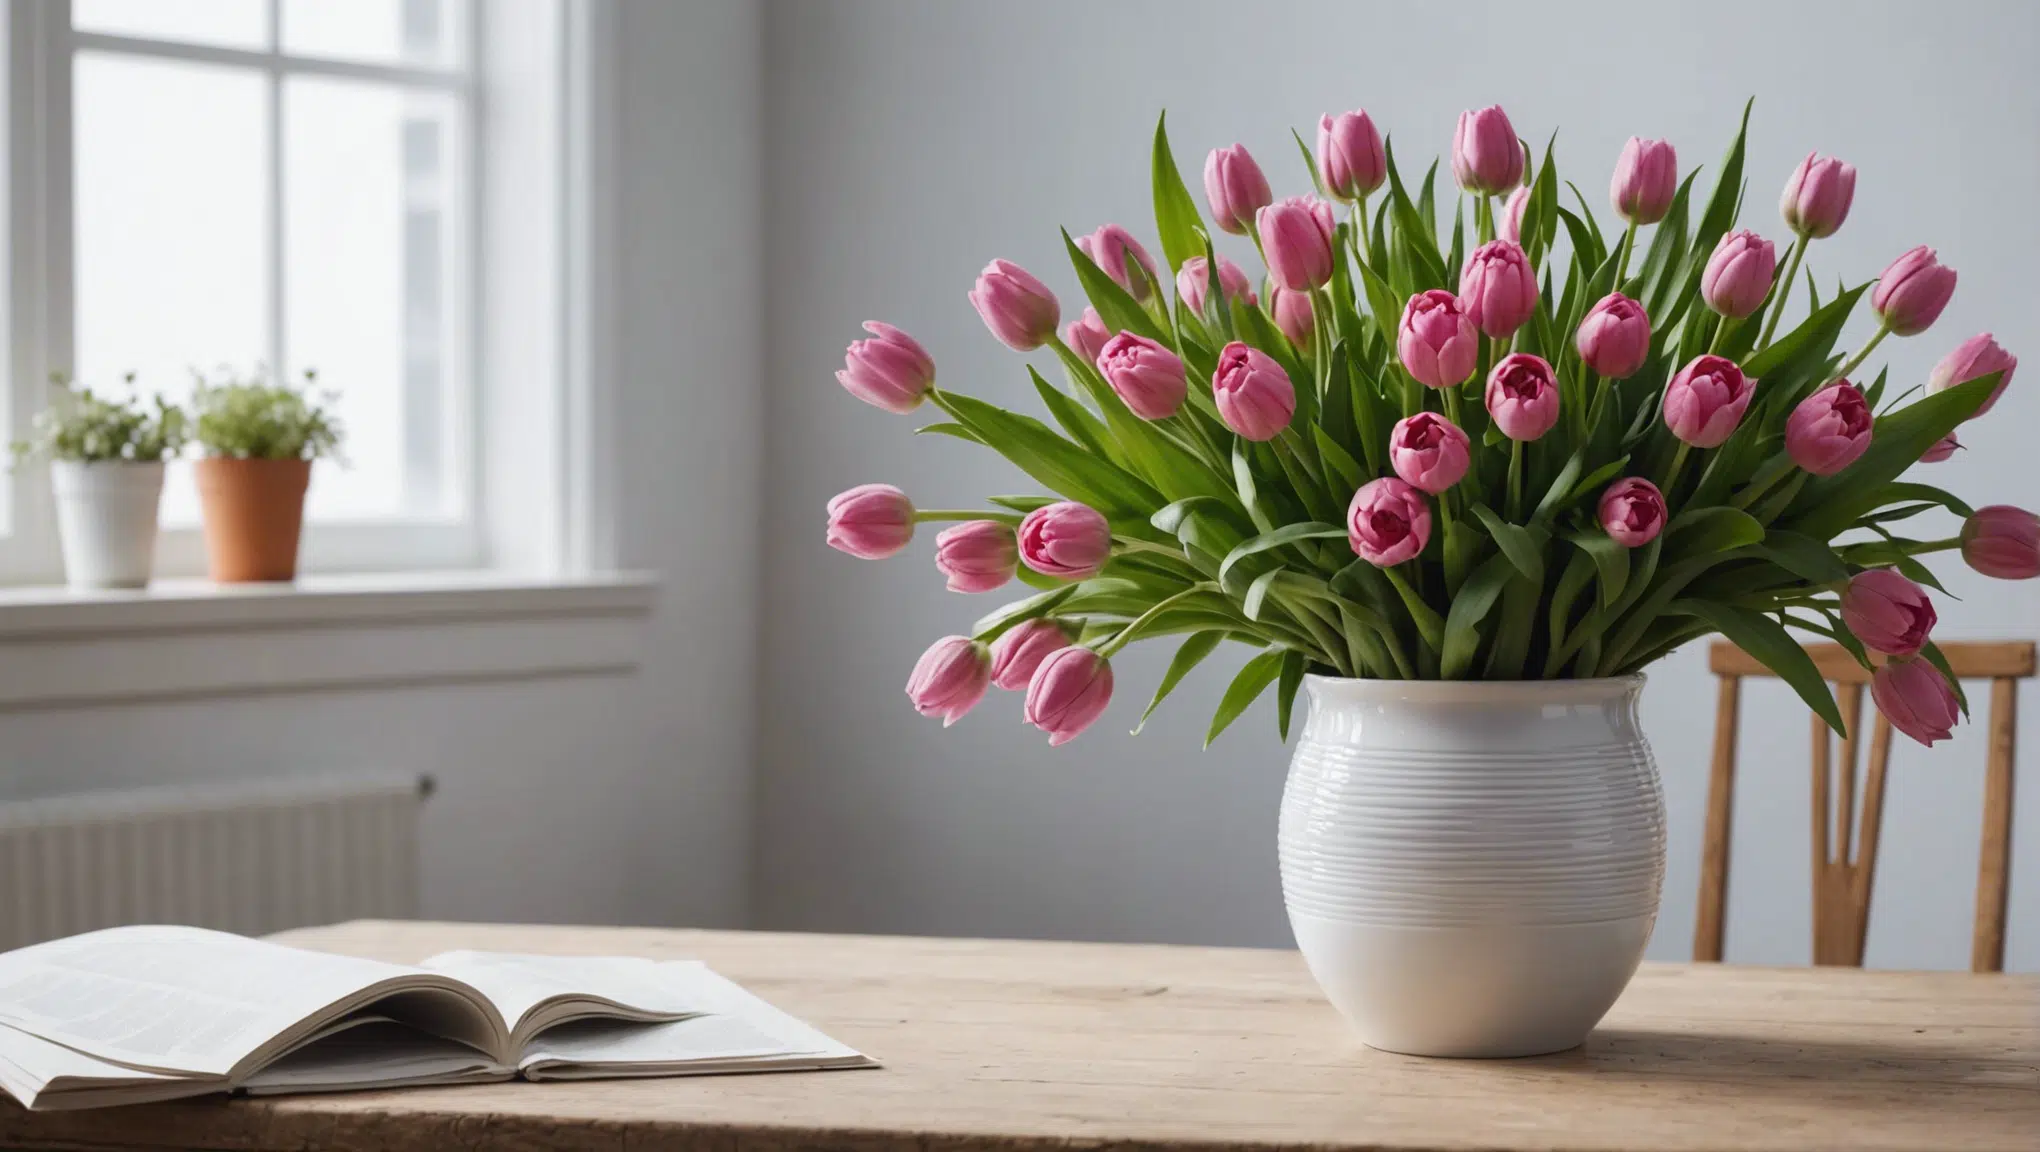 découvrez la méthode florale infaillible pour embellir votre intérieur et apporter une touche unique de beauté et d'harmonie à votre domicile.